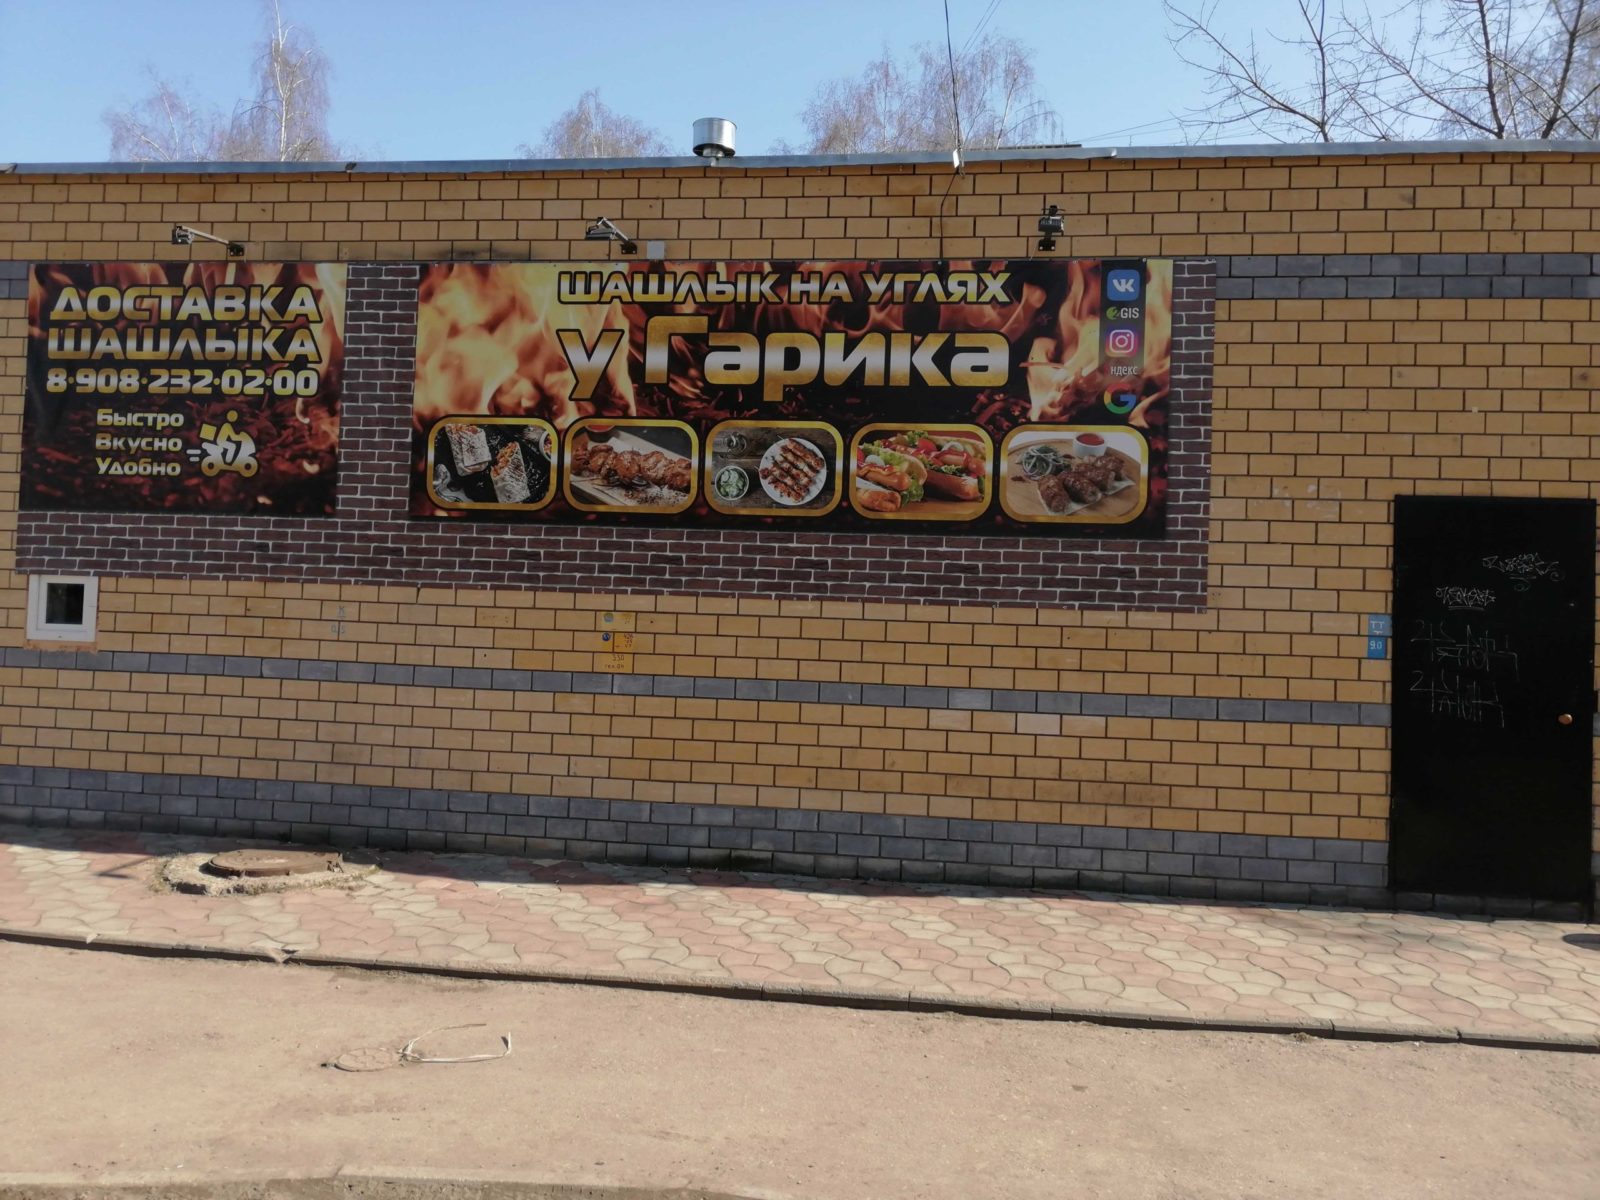 Где Купить Шашлык В Нижнем Новгороде